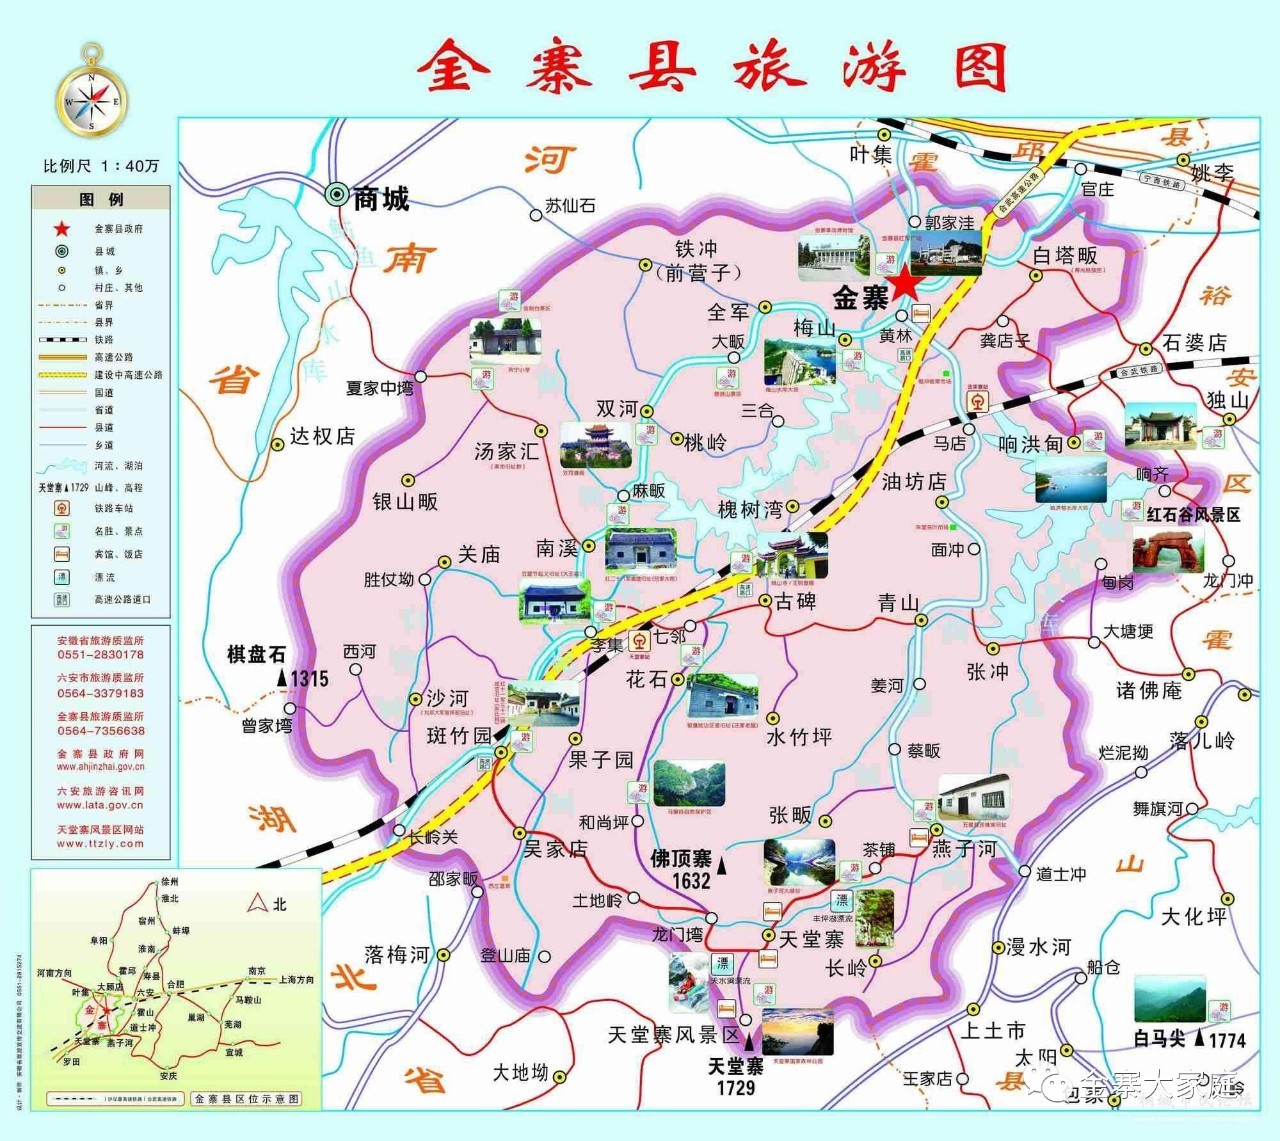 衡南县地图|衡南县地图全图高清版大图片|旅途风景图片网|www.visacits.com